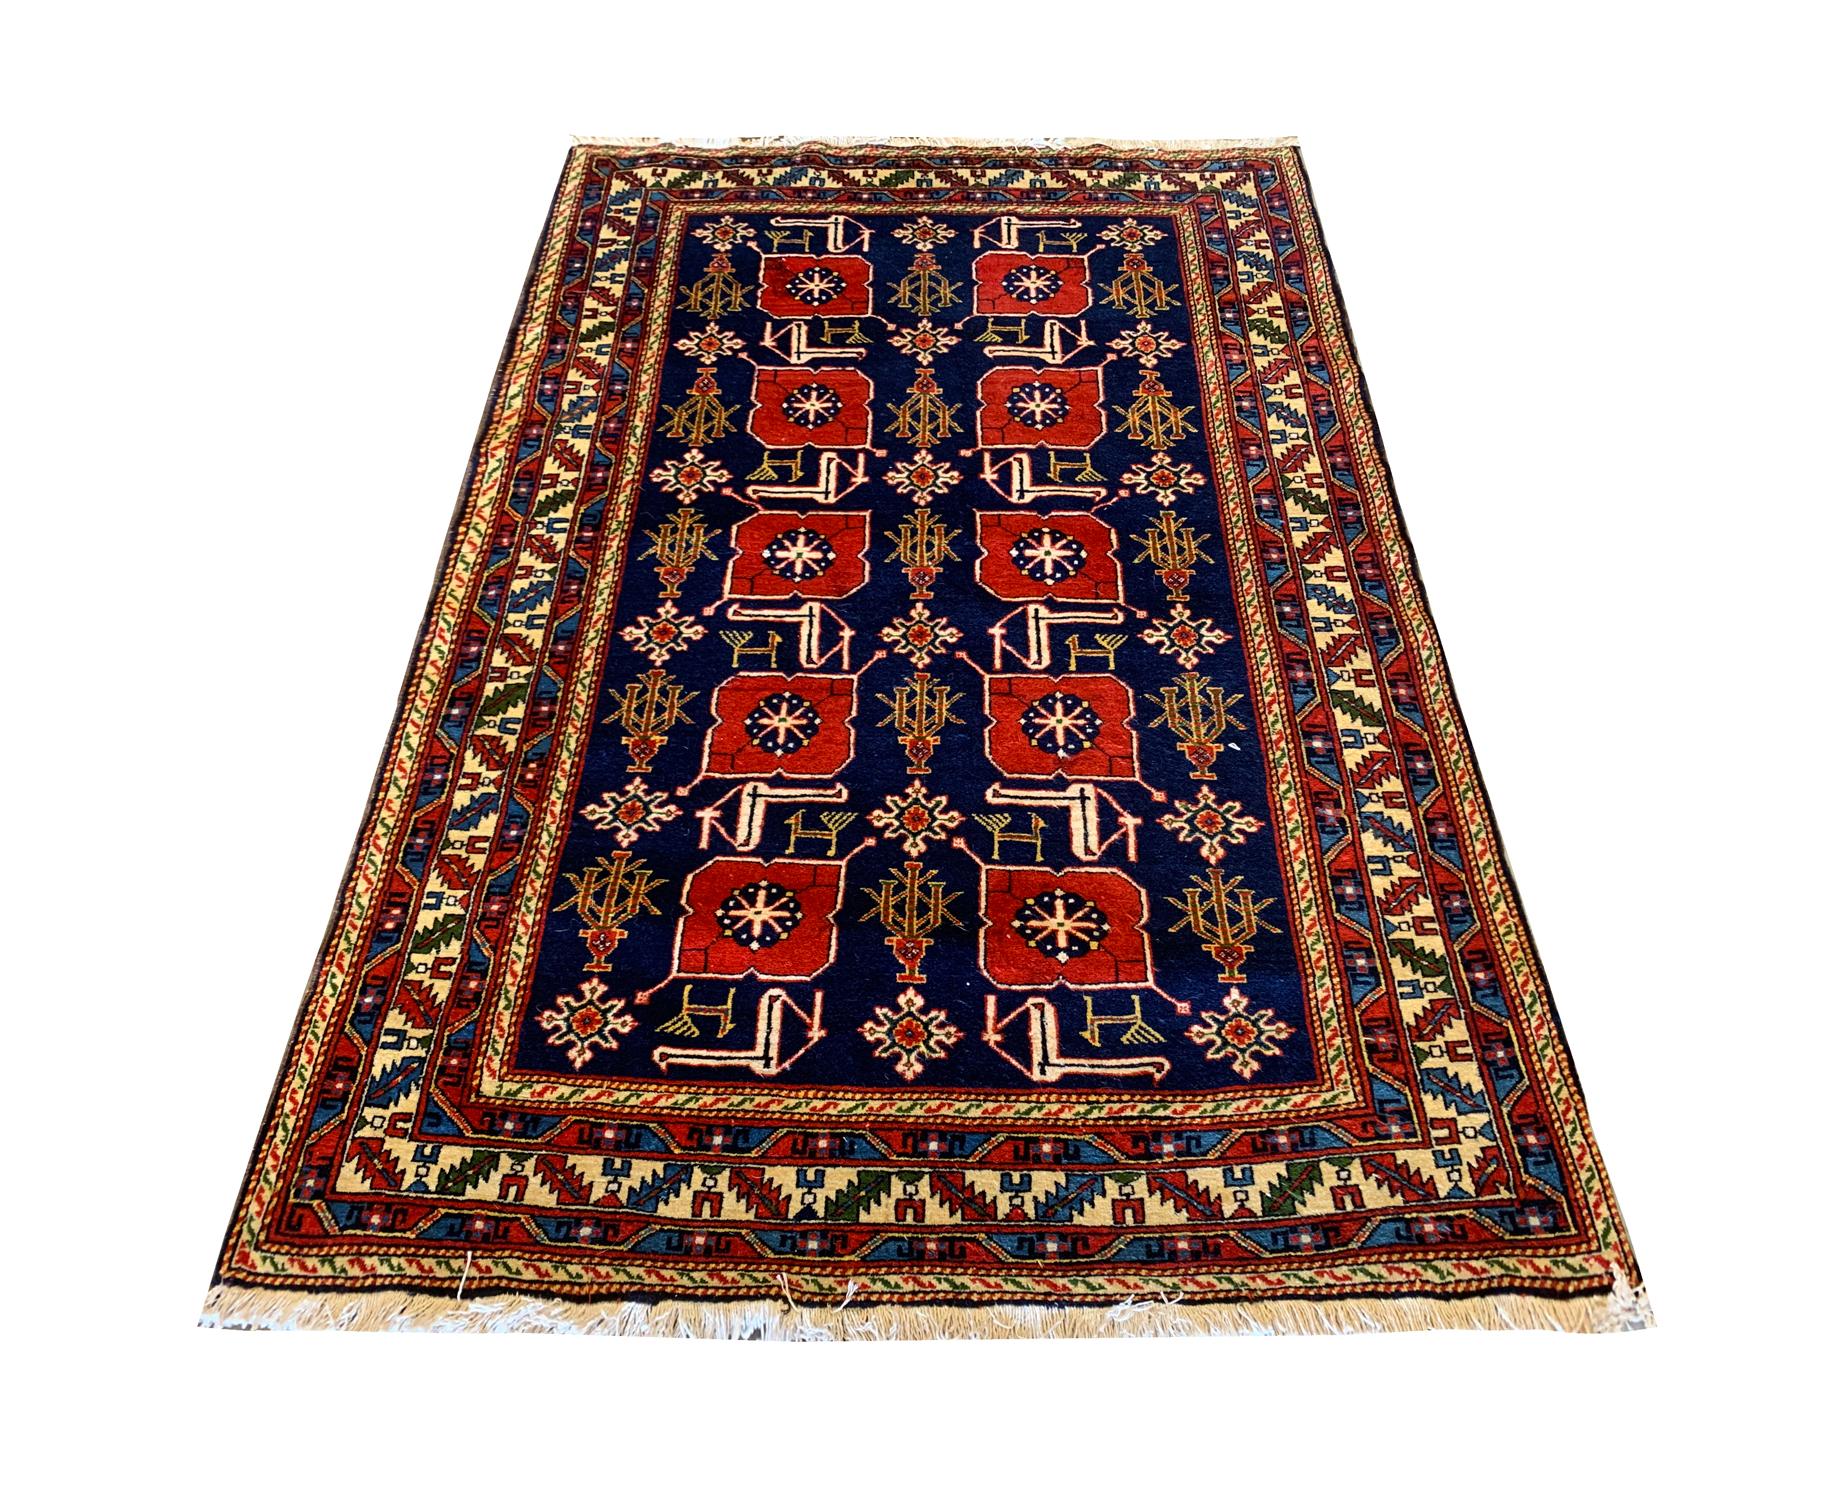 Blau und Rot sind die Hauptfarben dieses Karakaschli-Teppichs aus feiner Wolle, der in Aserbaidschan handgeknüpft wurde. Dieses Stück ist ein Sammlerstück mit einem tiefblauen Hintergrund und einem sehr detaillierten Muster, das mit roten,